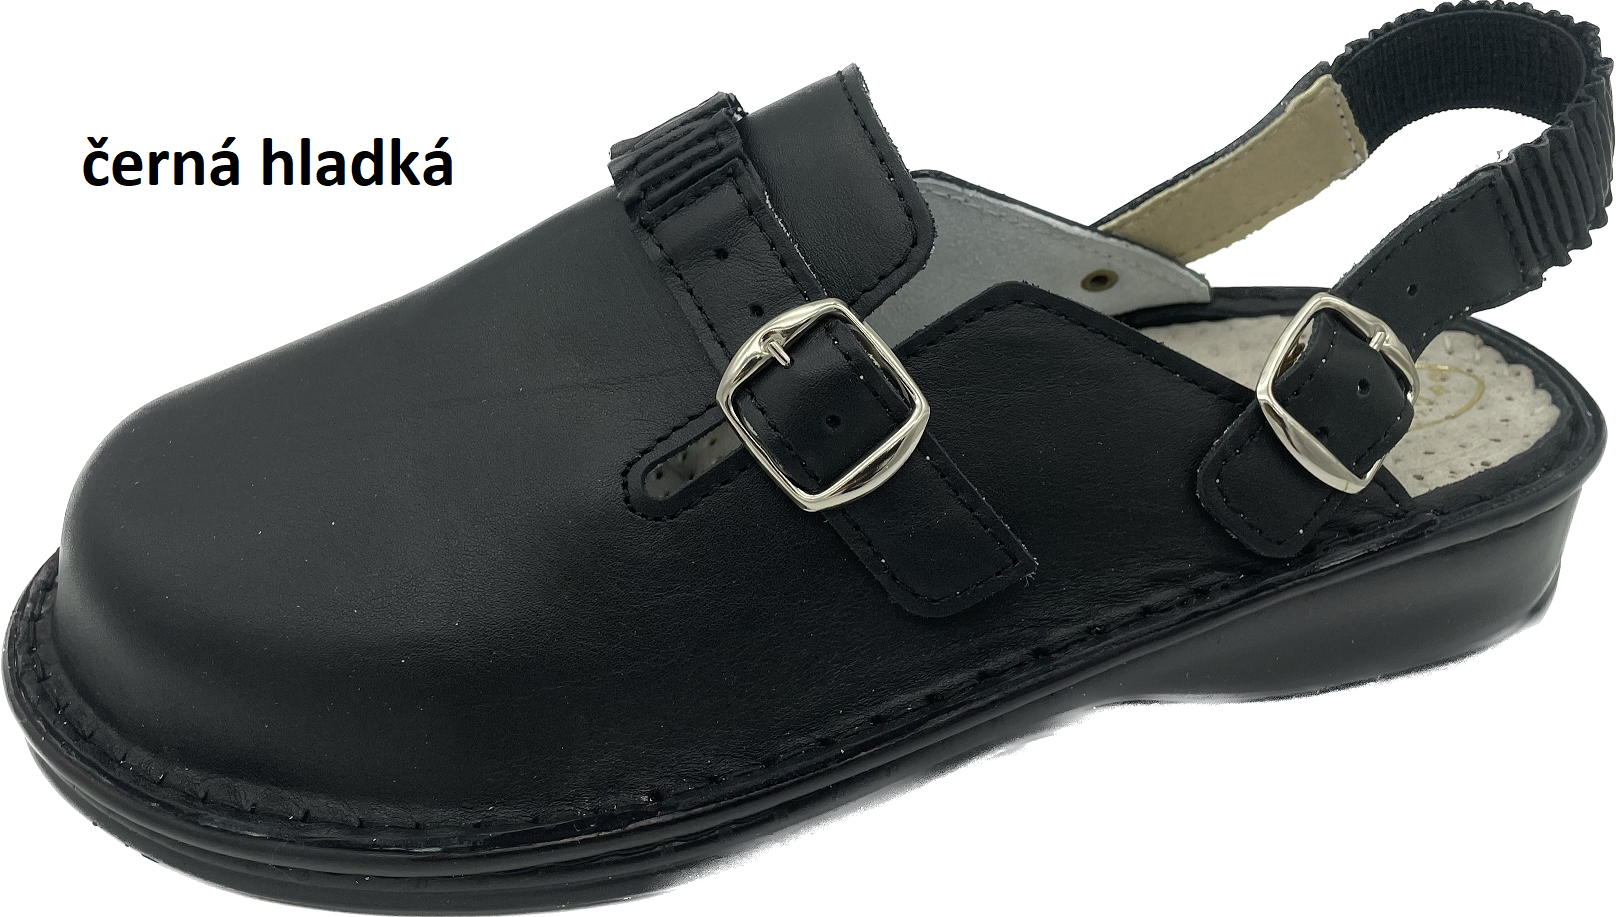 Boty Hanák vzor 308 P - černá podešev Barva usně: černá broušená, Velikosti obuvi: 42